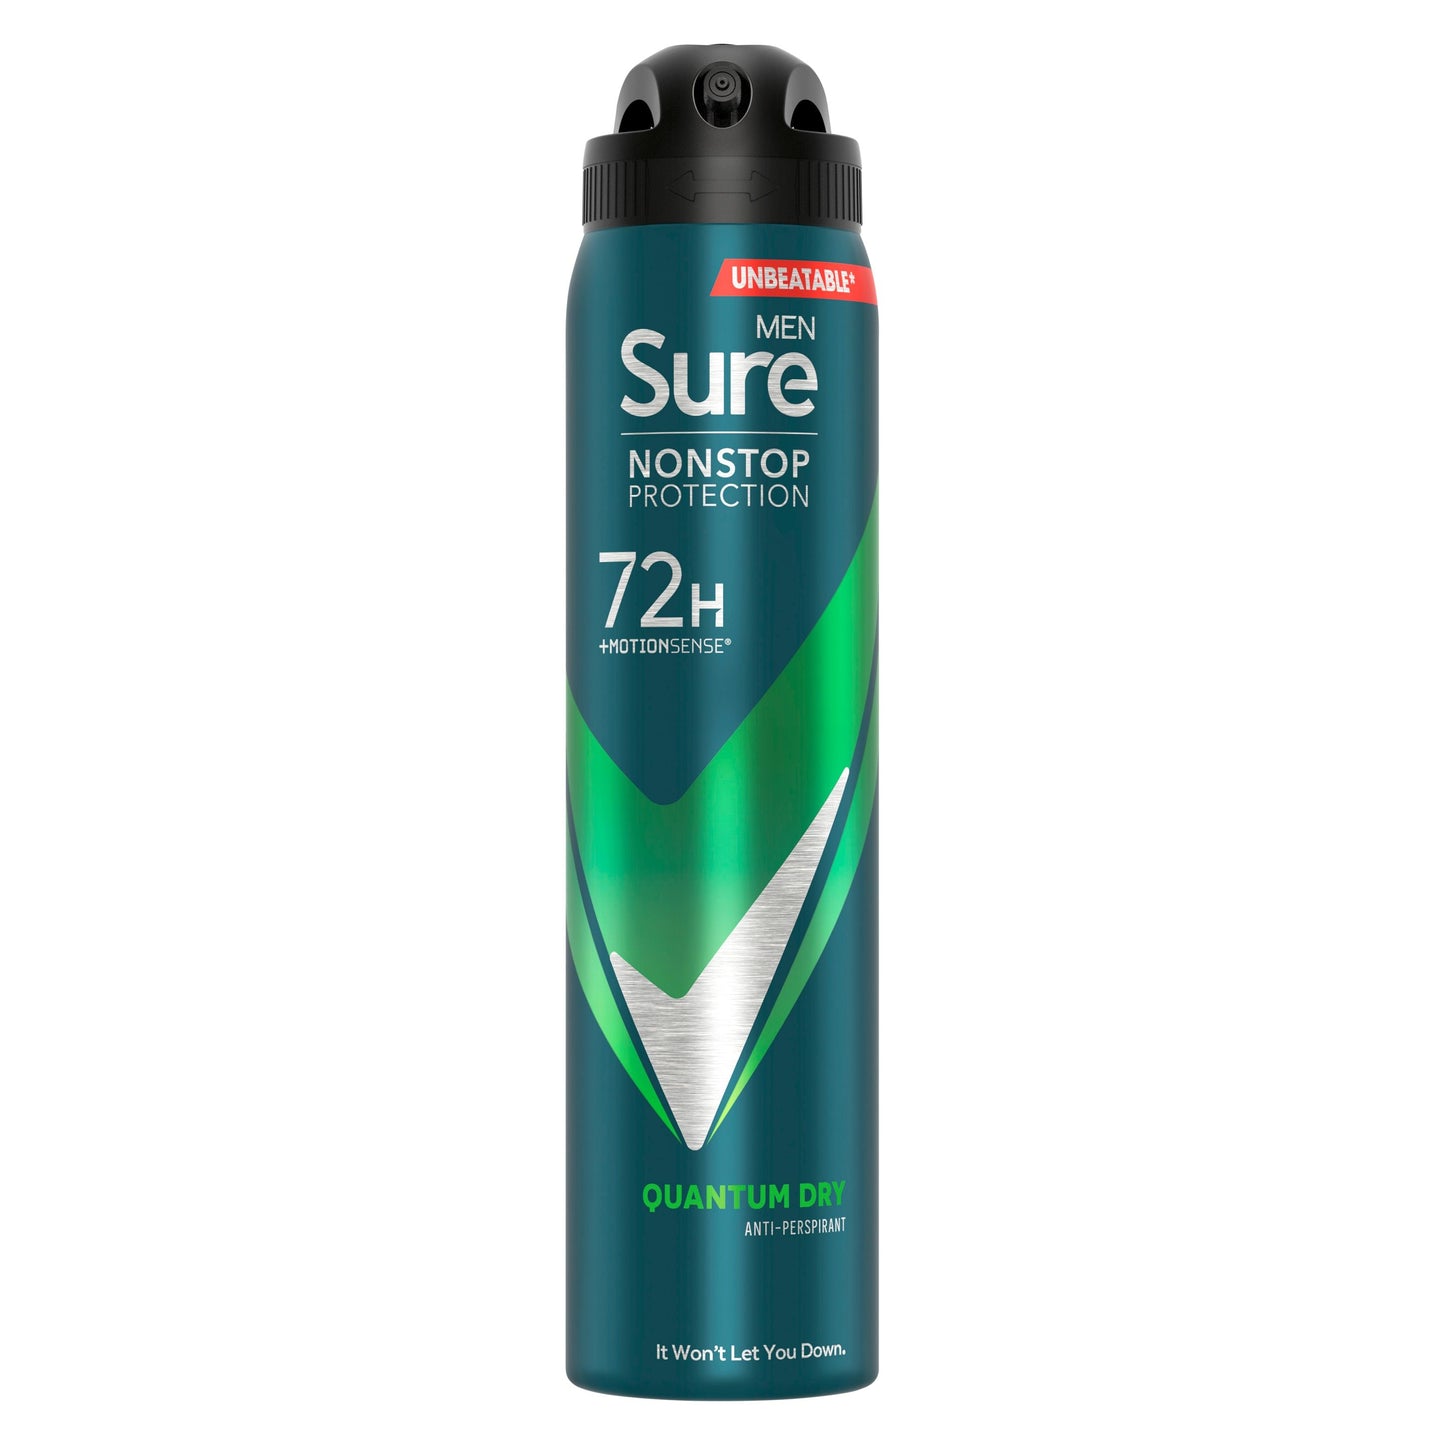 Sure men Quantum Dry Nonstop Protection Antiperspirant Deodorant Spray 250ml